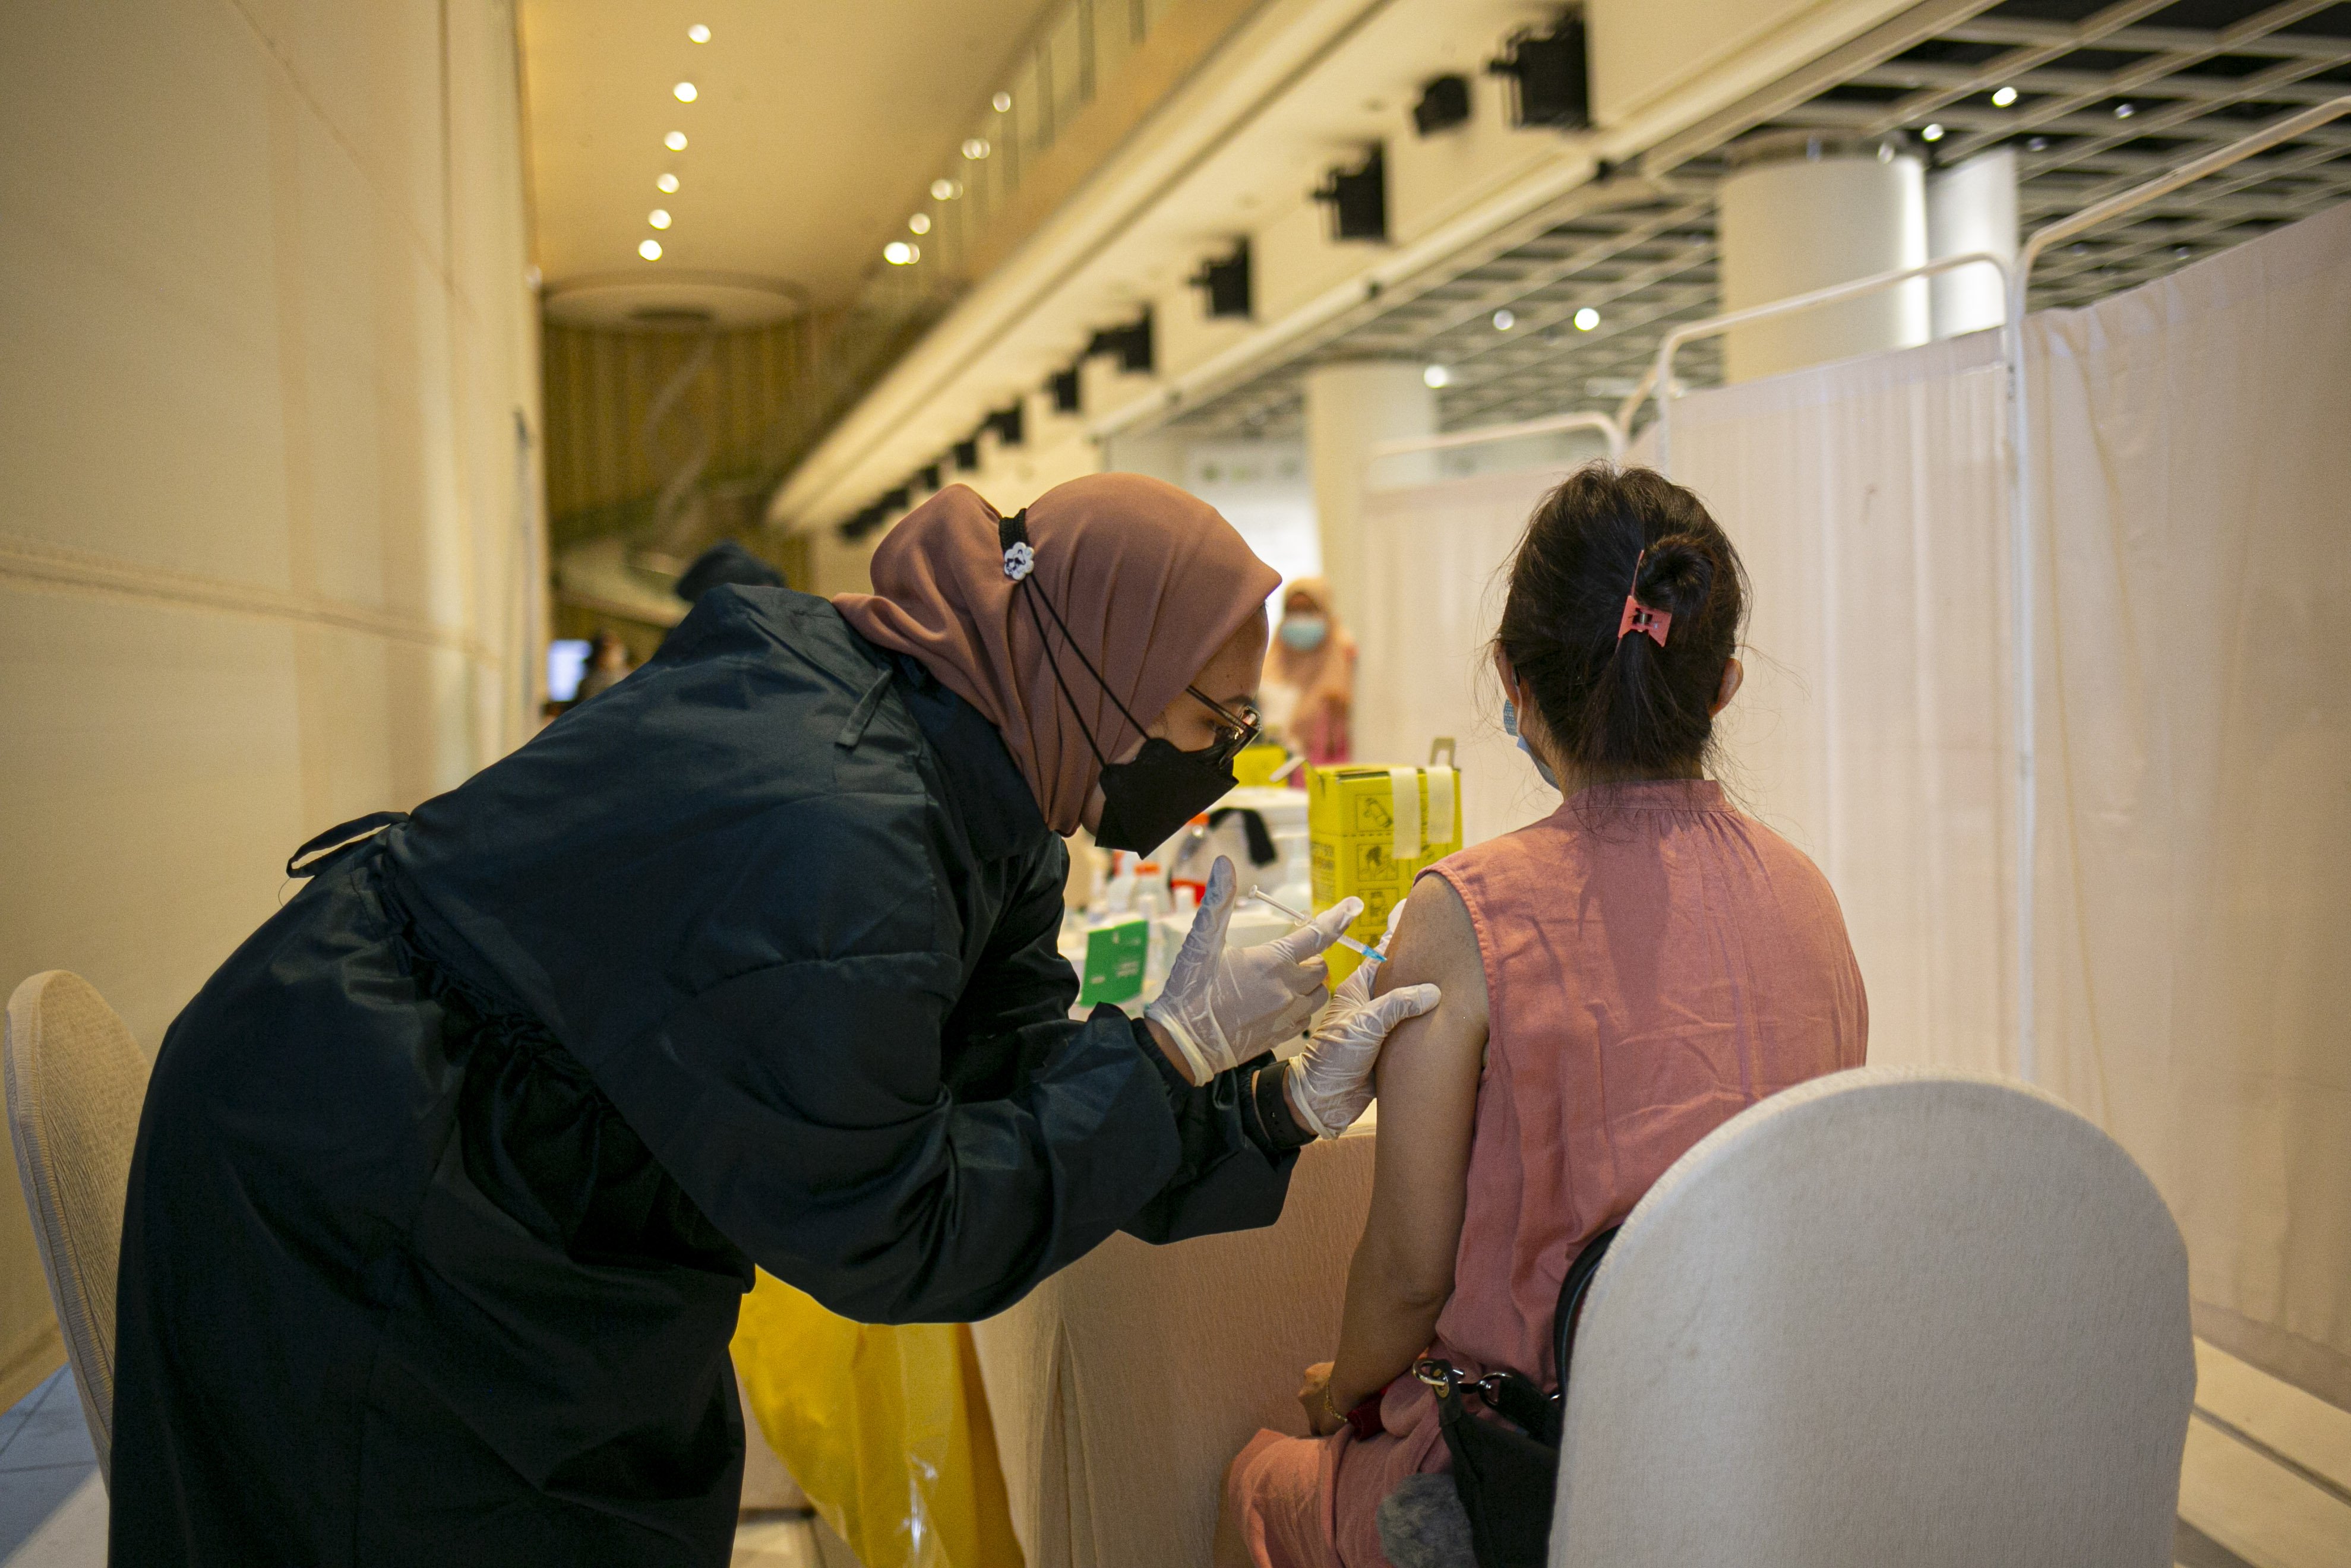 Petugas medis menyuntikan vaksin COVID-19 kepada pelaku UMKM di Ciputra Artpreneur, Jakarta, Kamis (1/4/2021). Kementerian Koperasi dan Usaha Kecil dan Menengah menyelenggarakan vaksinasi COVID-19 massal bagi 1.500 pelaku Usaha mikro kecil menengah (UMKM) di DKI Jakarta dengan target vaksinasi untuk pelaku UMKM tersebut mencapai 250.000 orang.